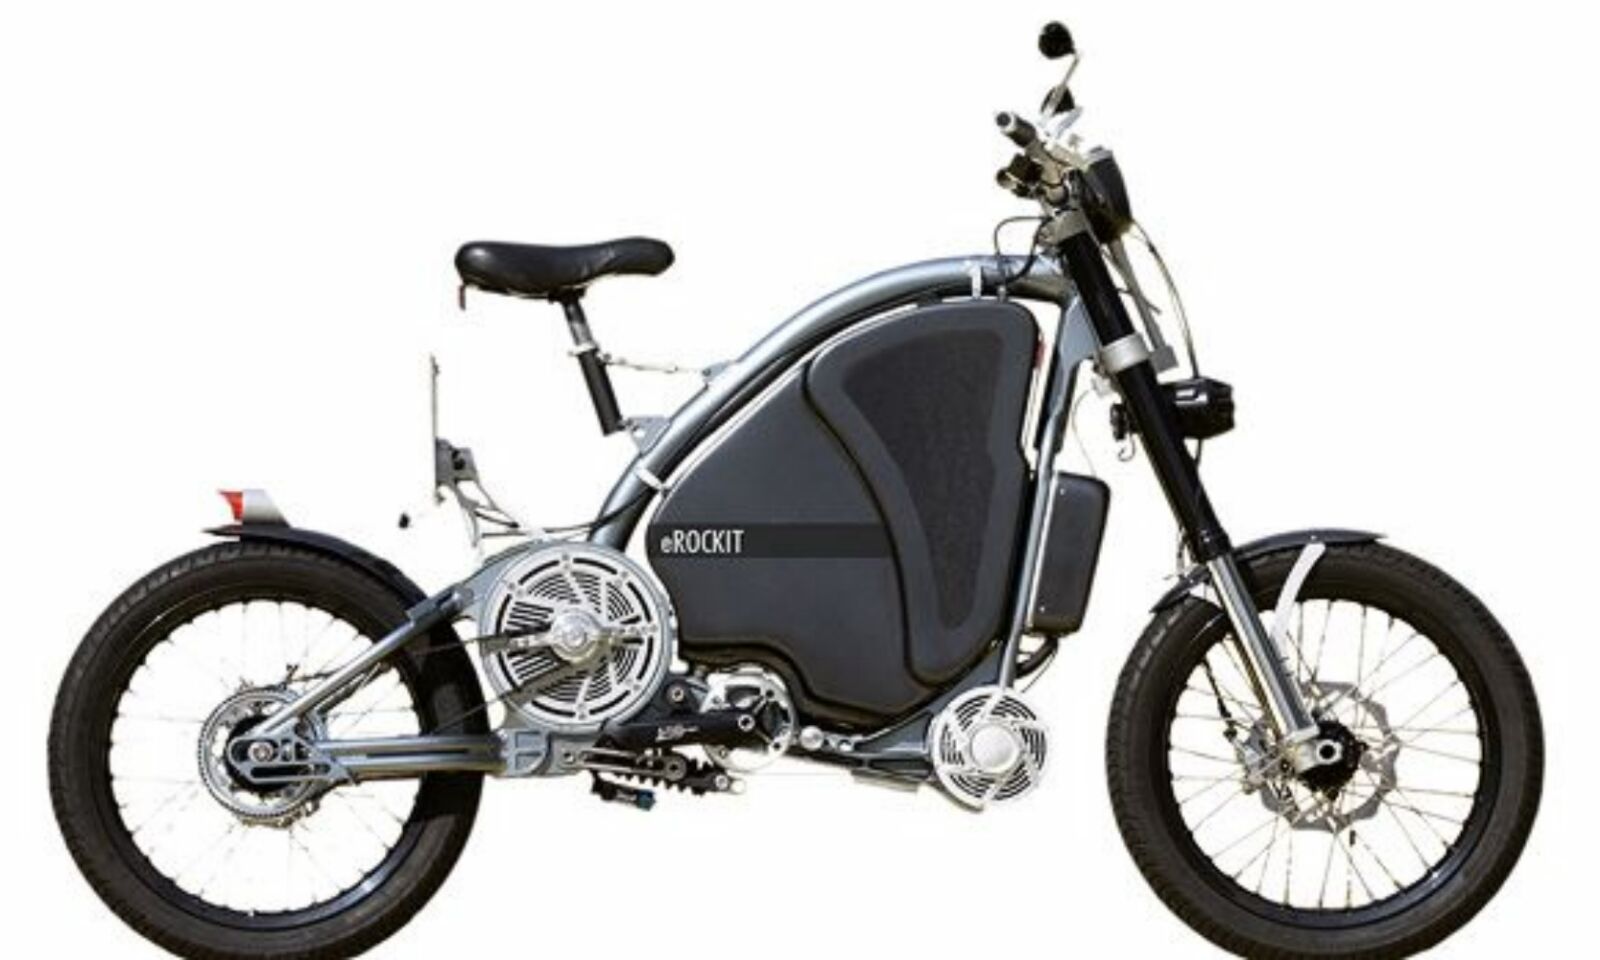 vaak Bijlage Kruipen eRockit hybride motorfiets - Bikerbook